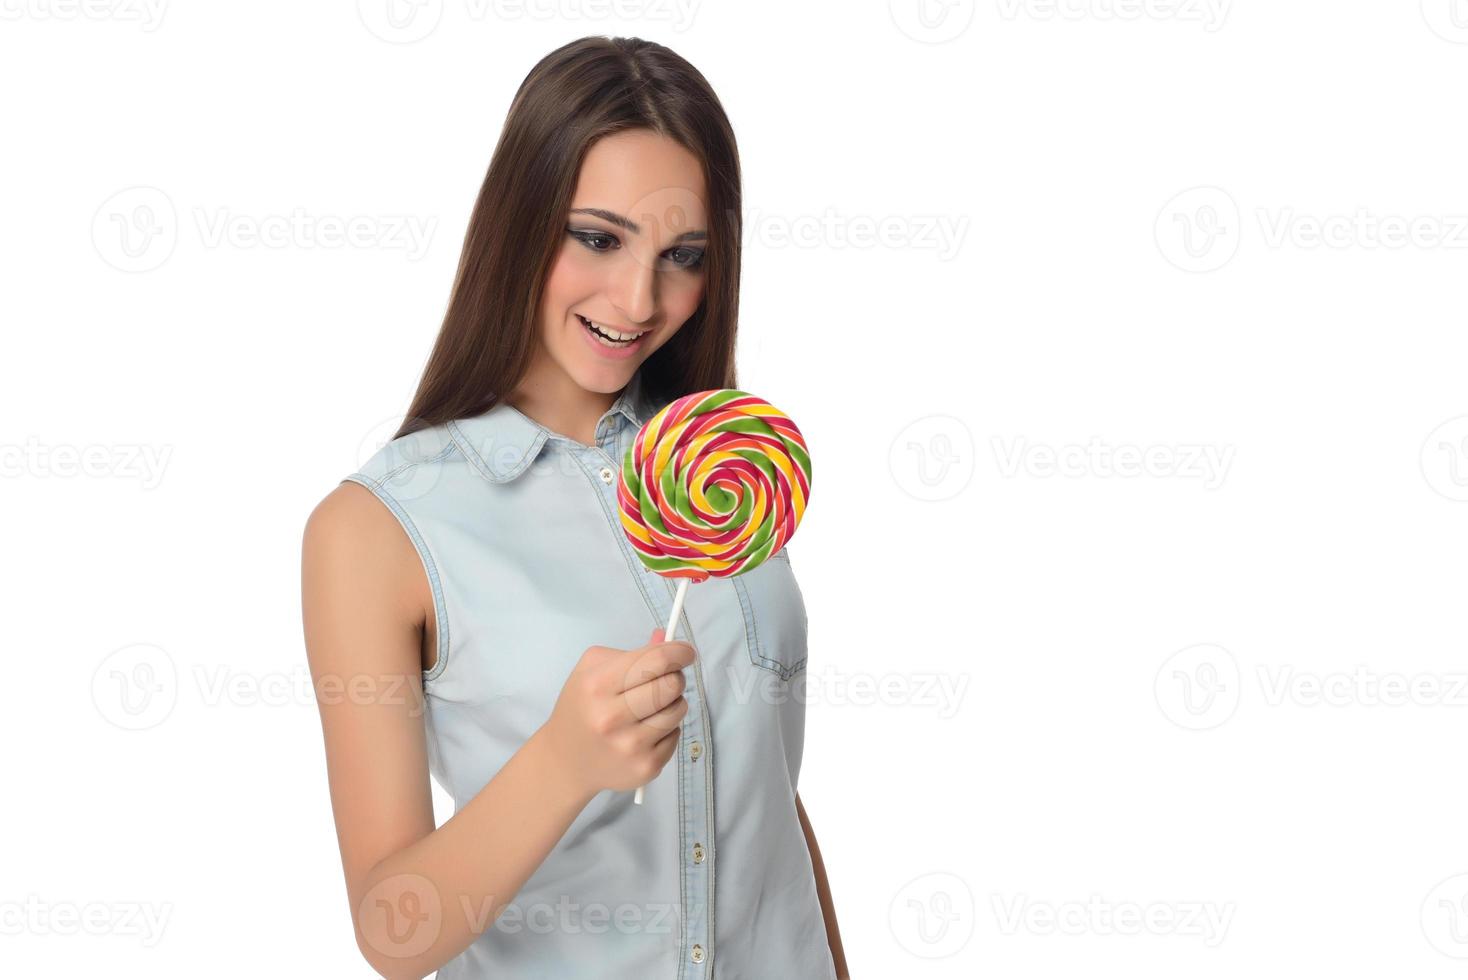 kvinna slick ljuv godis. kvinna modell äter utsökt konfektyr klubba med överraskad uttryck. studio skott isolerat vit bakgrund foto